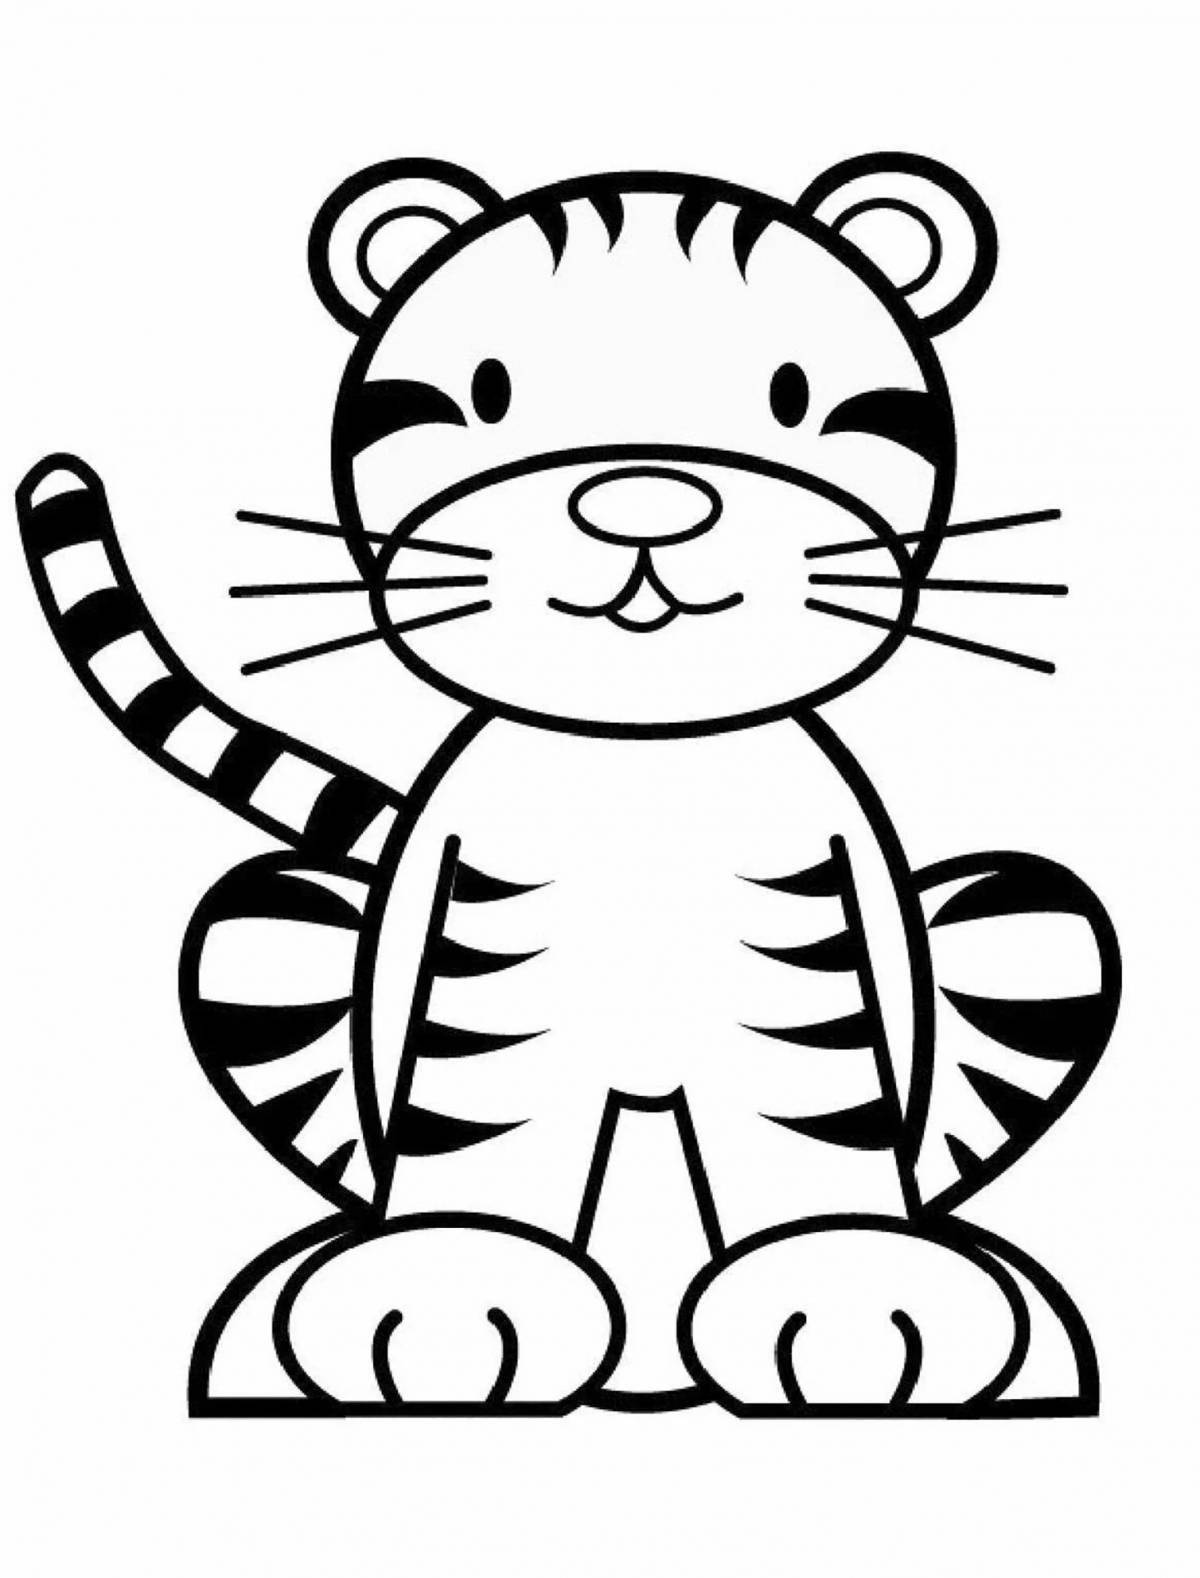 Увлекательная раскраска тигра для детей